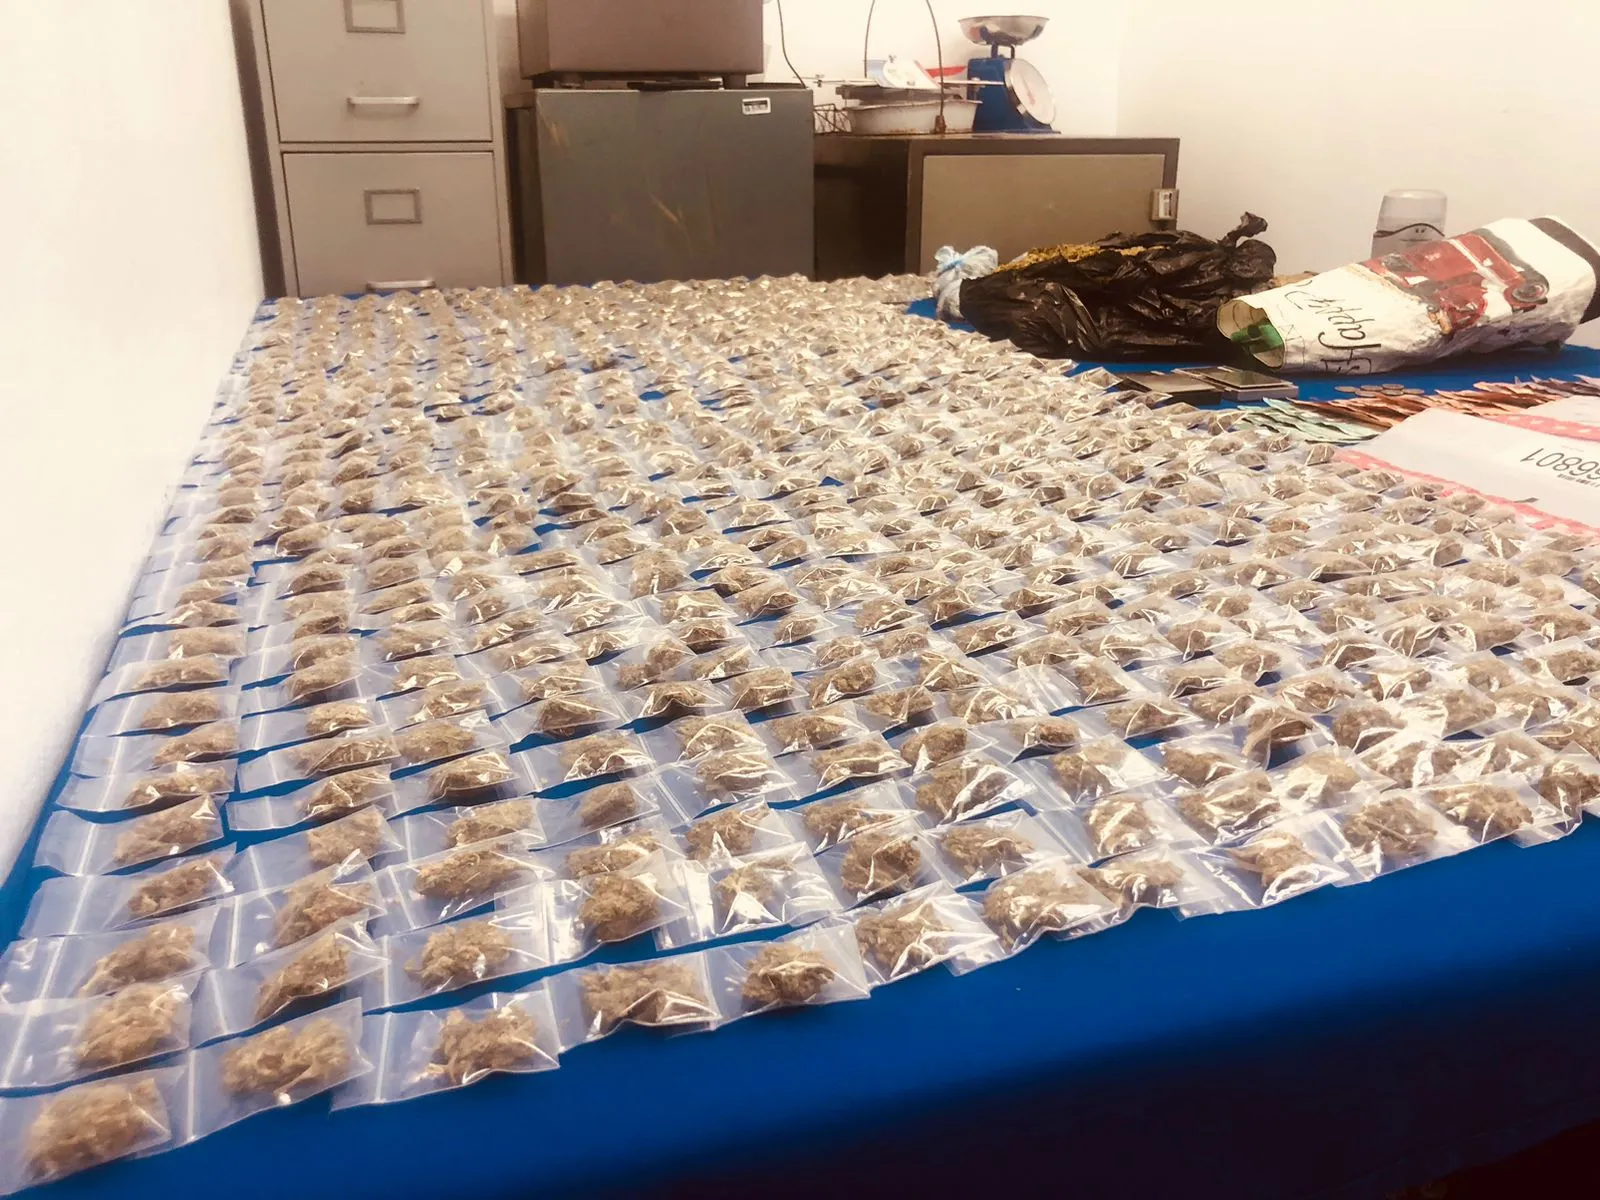 Confiscan más de 66 mil gramos de drogas y arrestan a ocho personas en allanamientos simultáneos